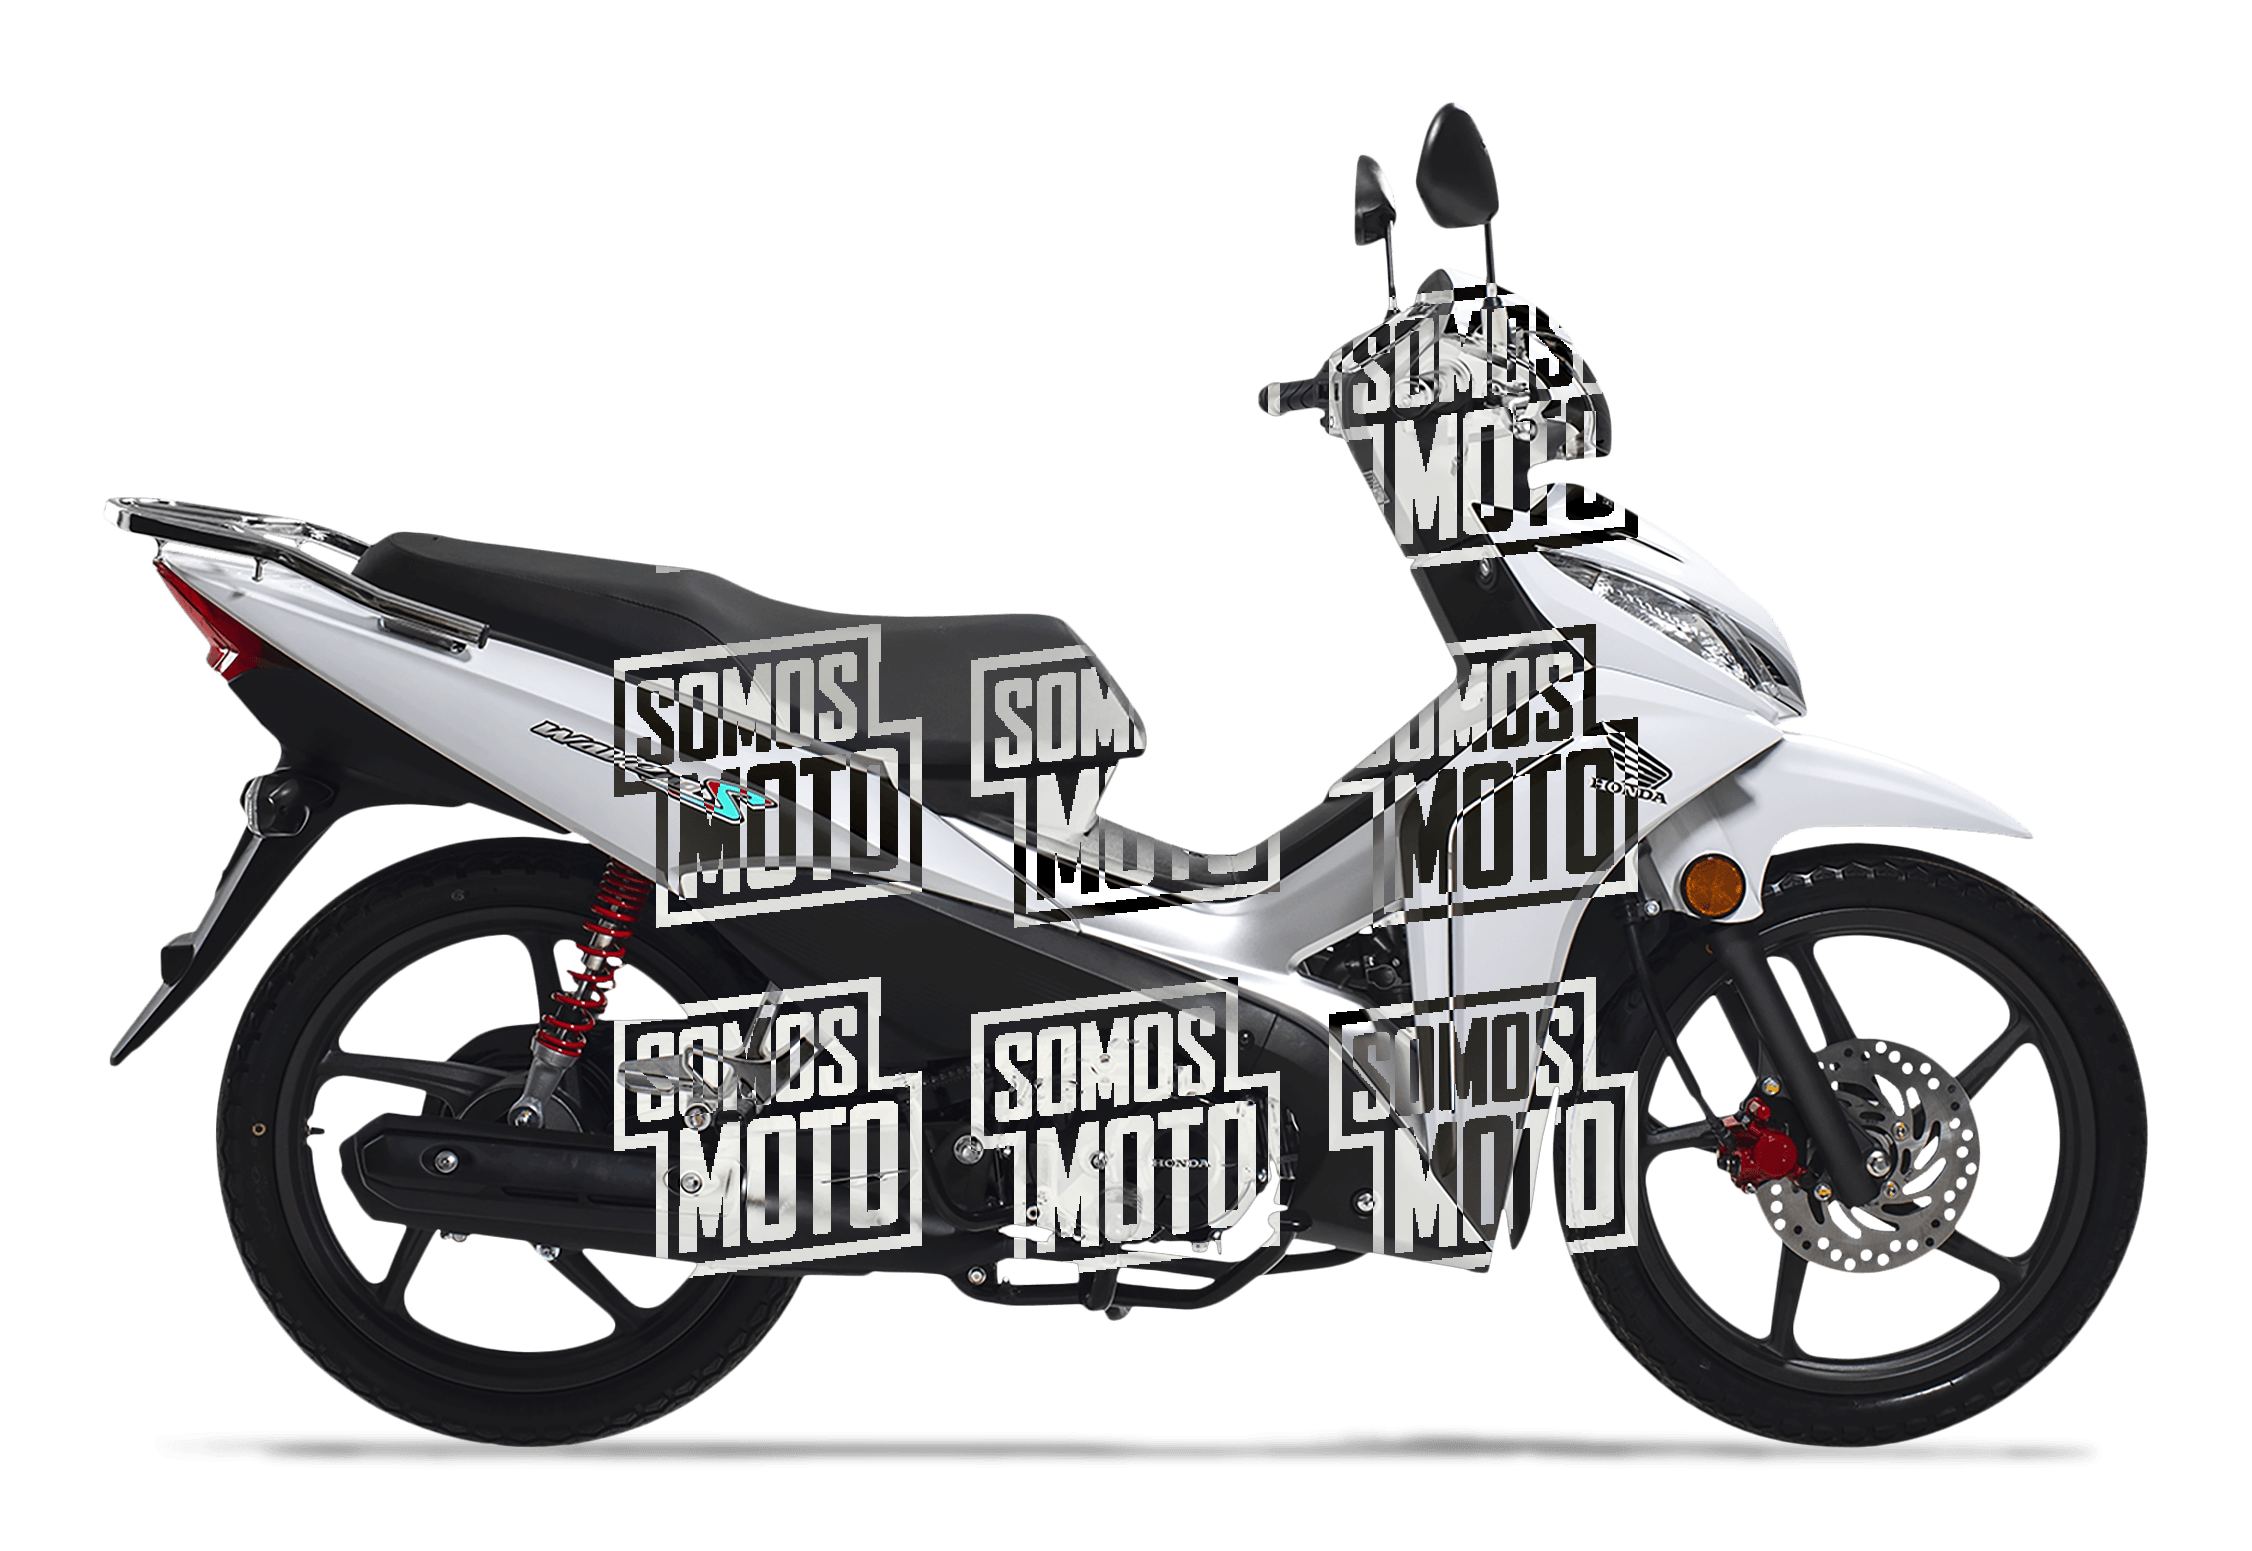 Honda Wave 110scd 2019 Precio 1559 Motos Honda Somos Moto Perú 8891